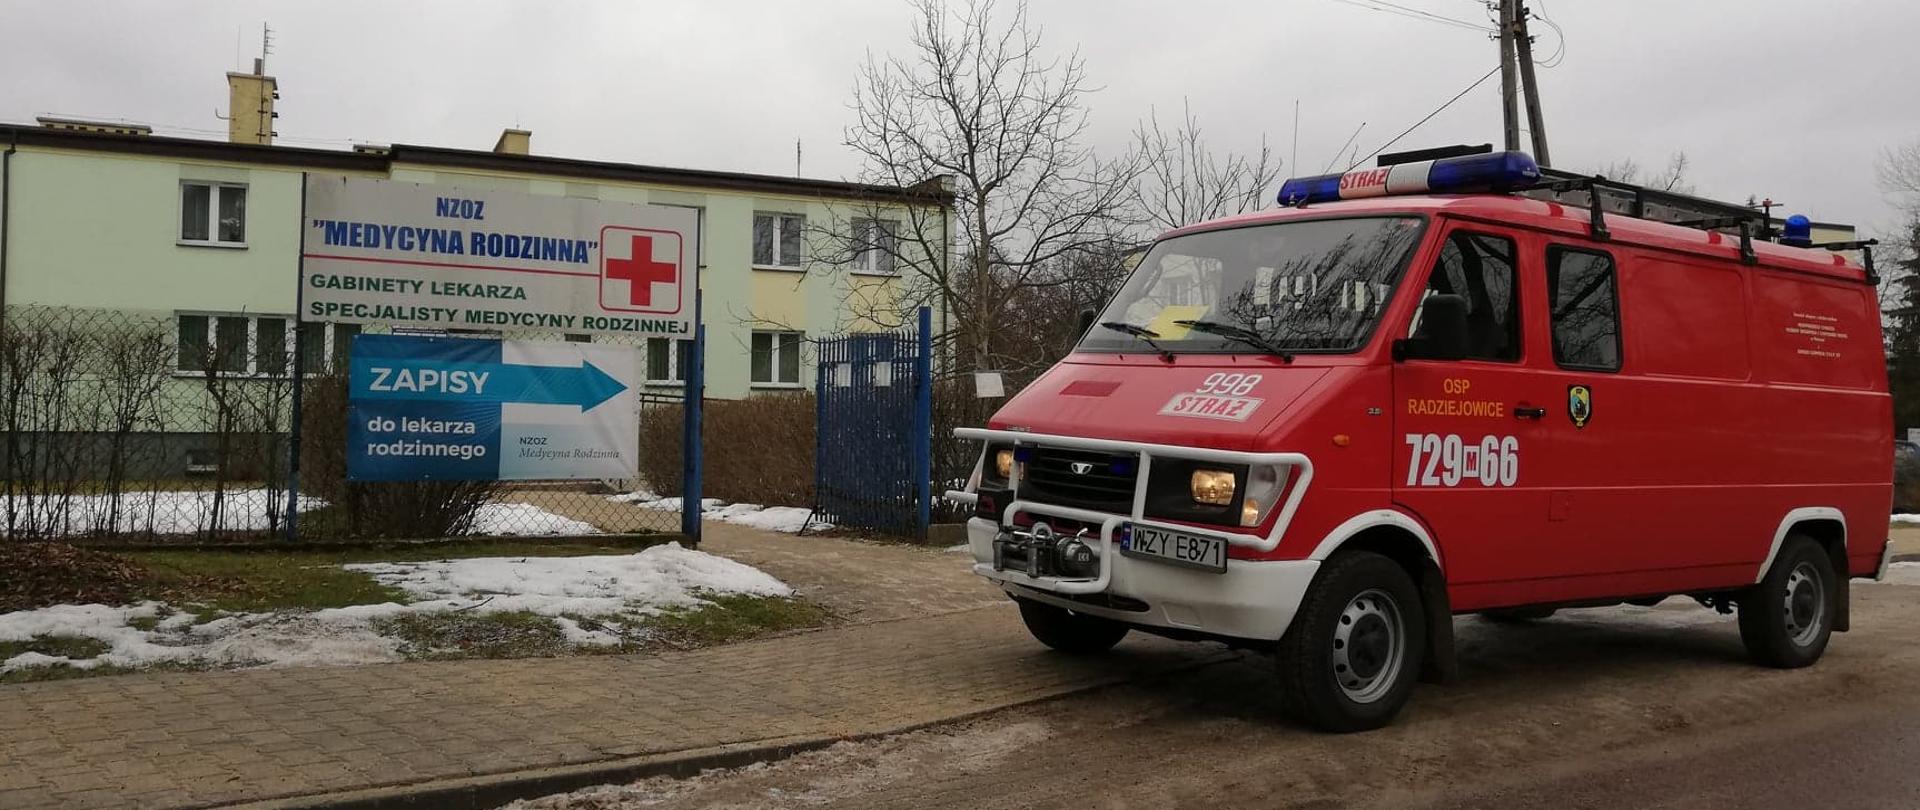 Na pierwszym planie stoi zaparkowany przy drodze czerwony samochód - strażacki bus z OSP Radziejowice. W tle widać blado zielony budynek przychodni.